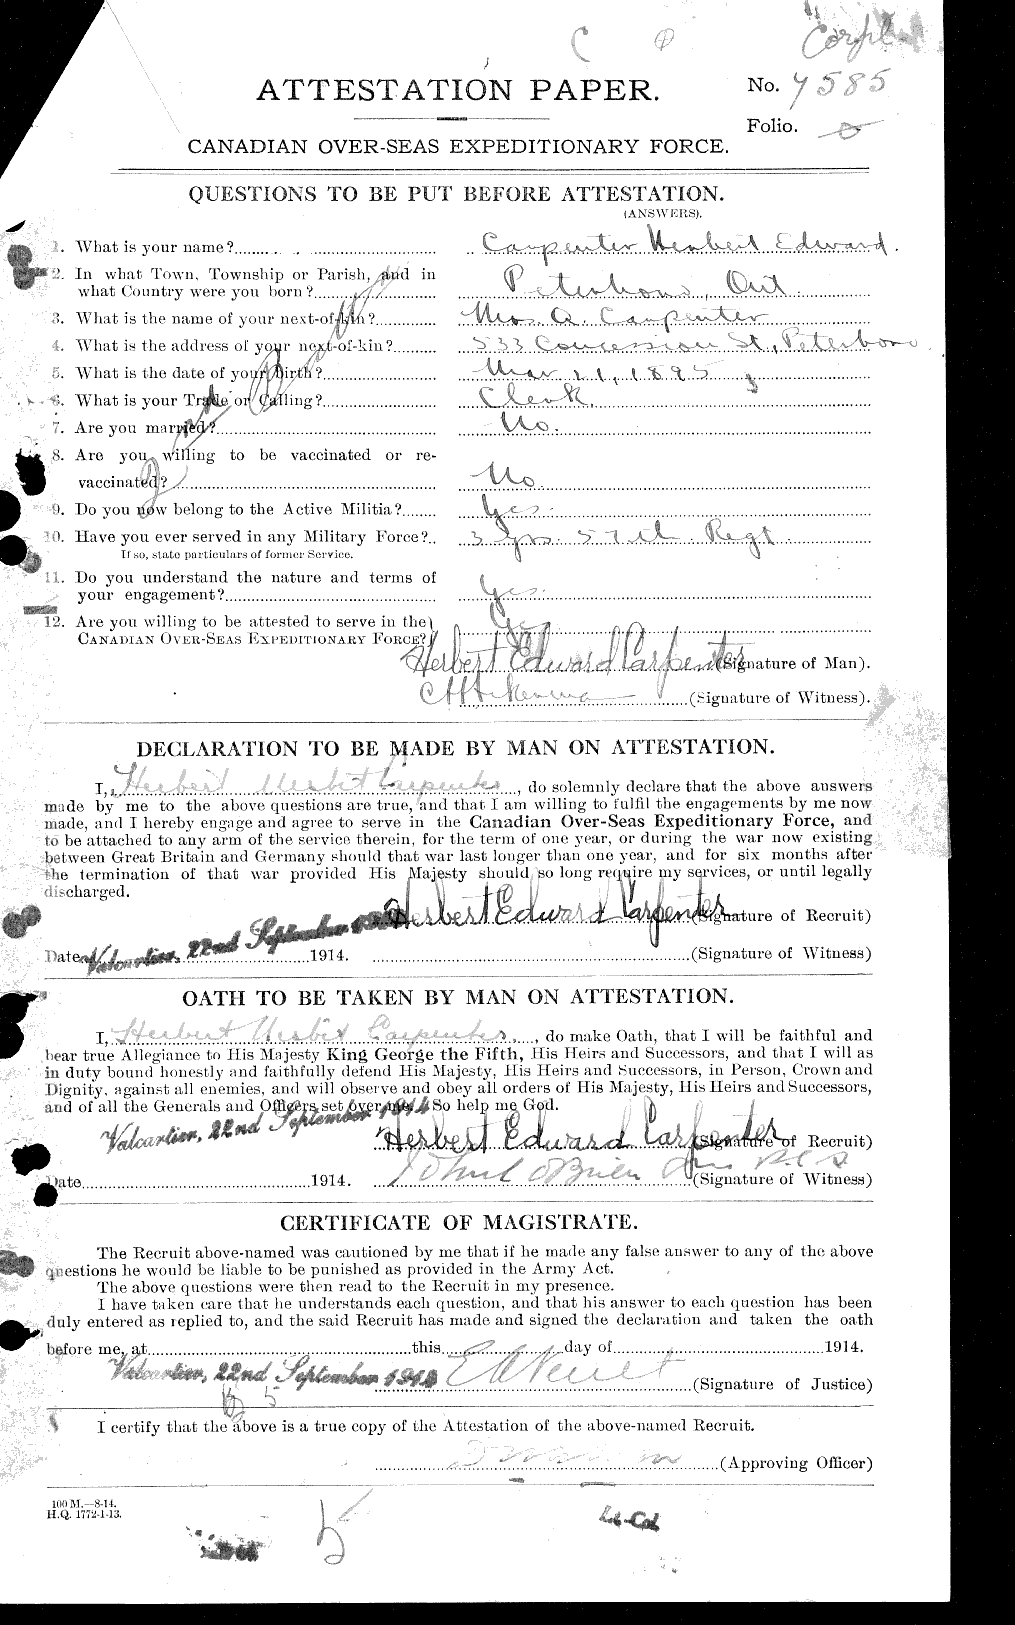 Dossiers du Personnel de la Première Guerre mondiale - CEC 005236a